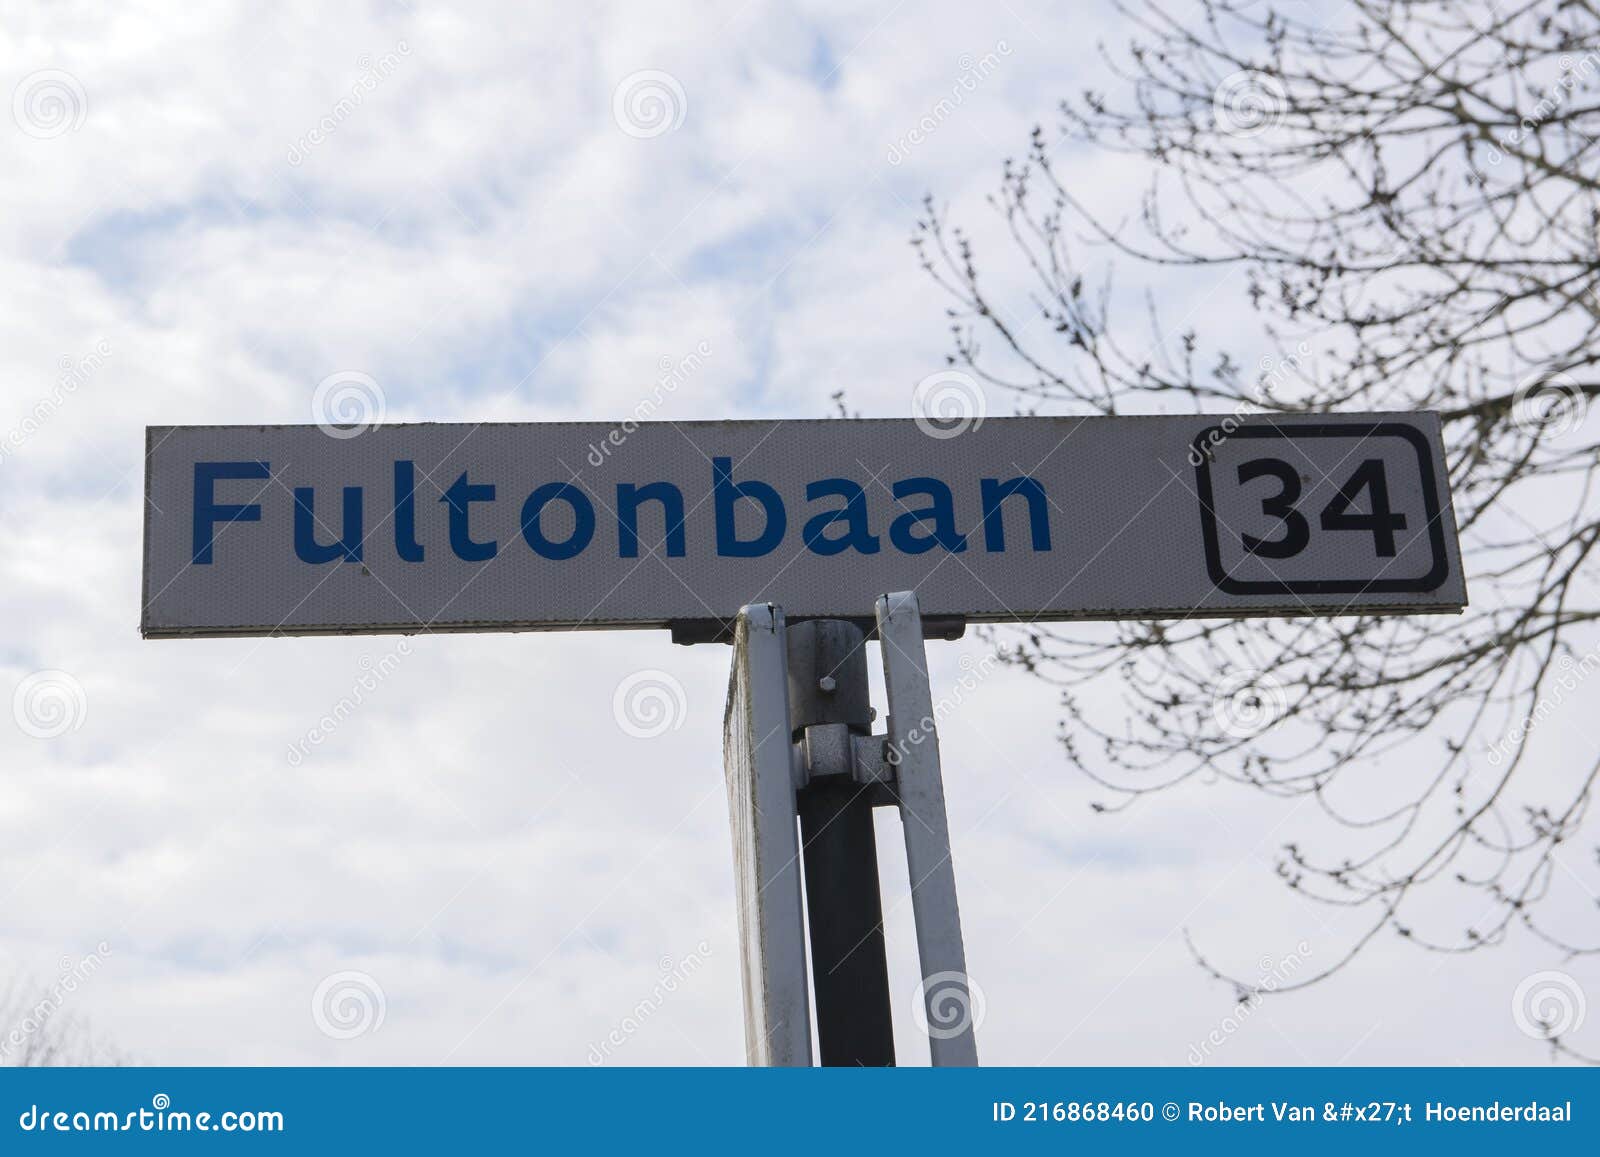 street sign fultonbaan at nieuwegein the netherlands 14-4-2021